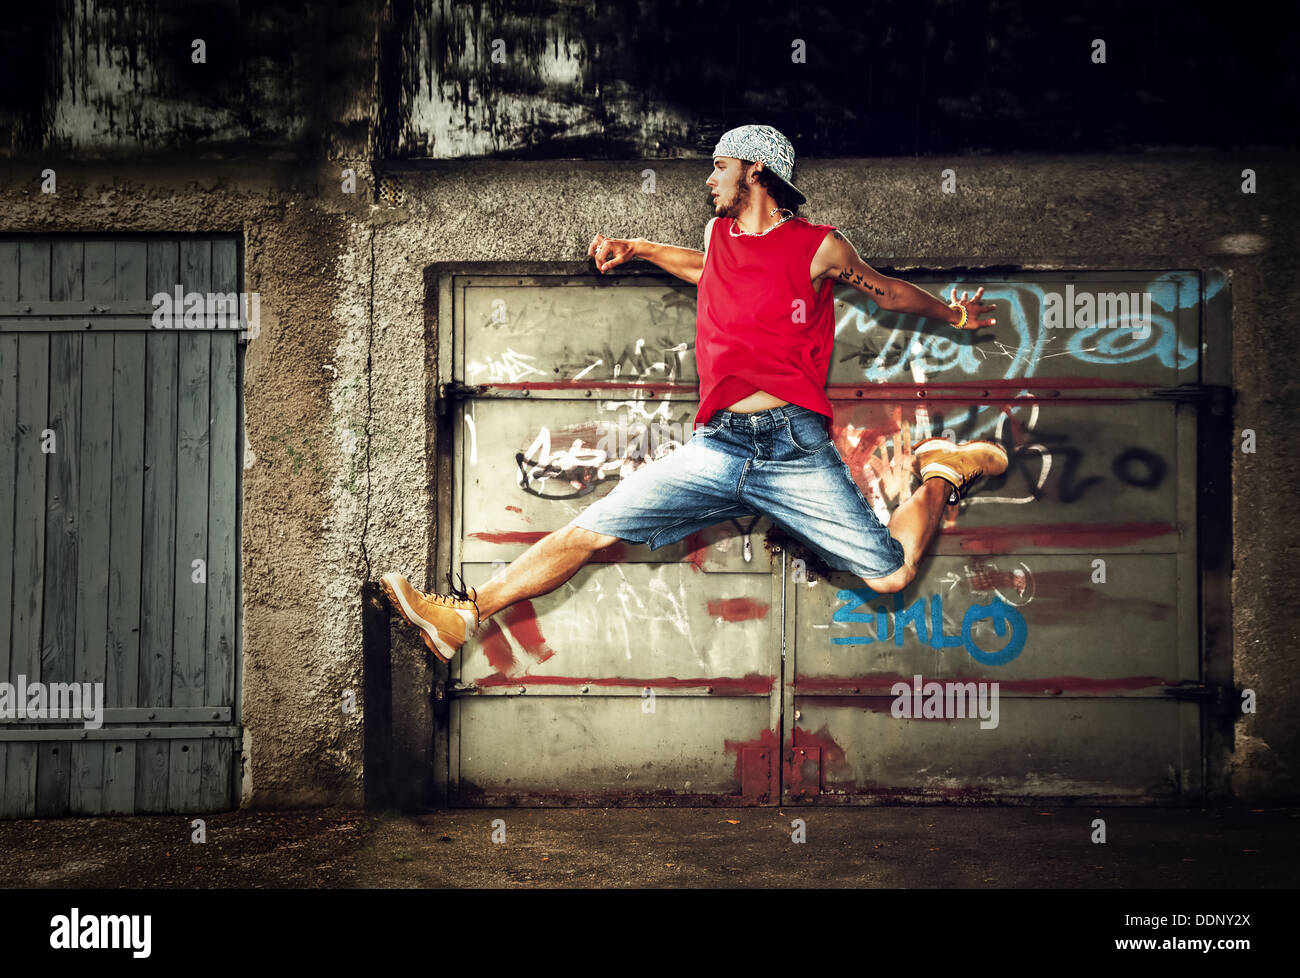 Jeune homme / DANSE / saut de l'adolescence sur graffiti grunge wall background Banque D'Images